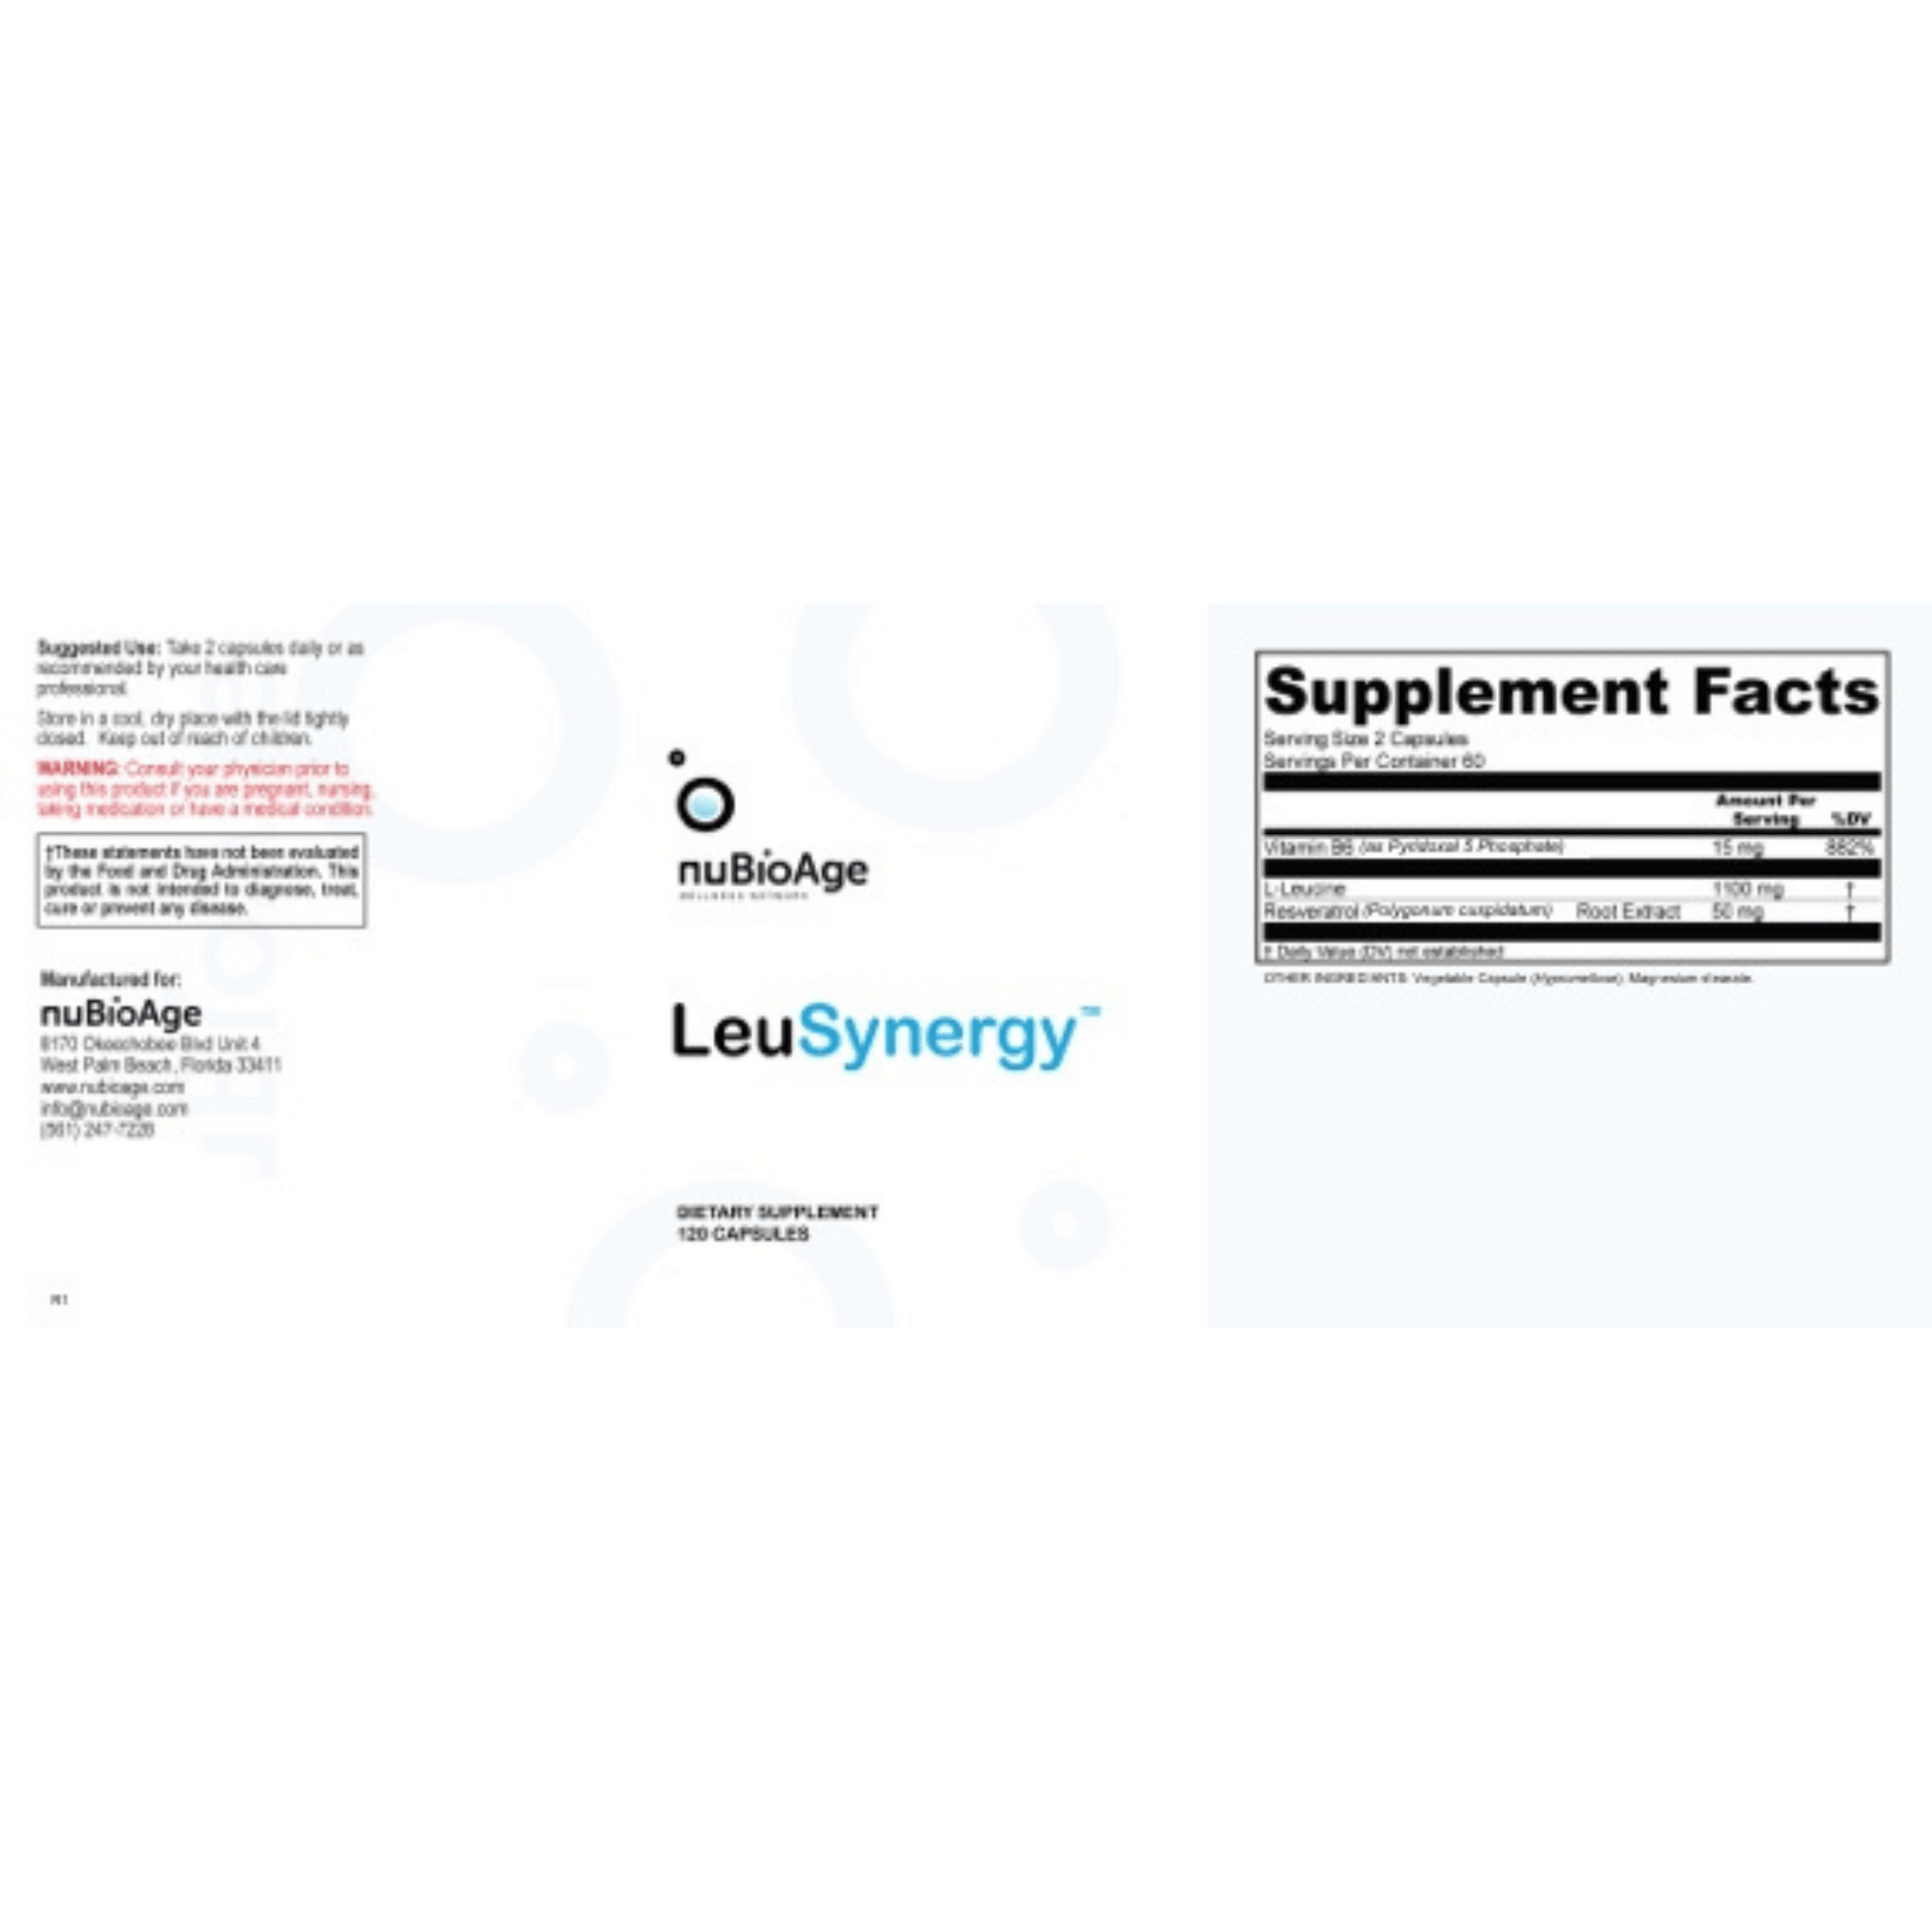 LeuSynergy NuBioAge Label